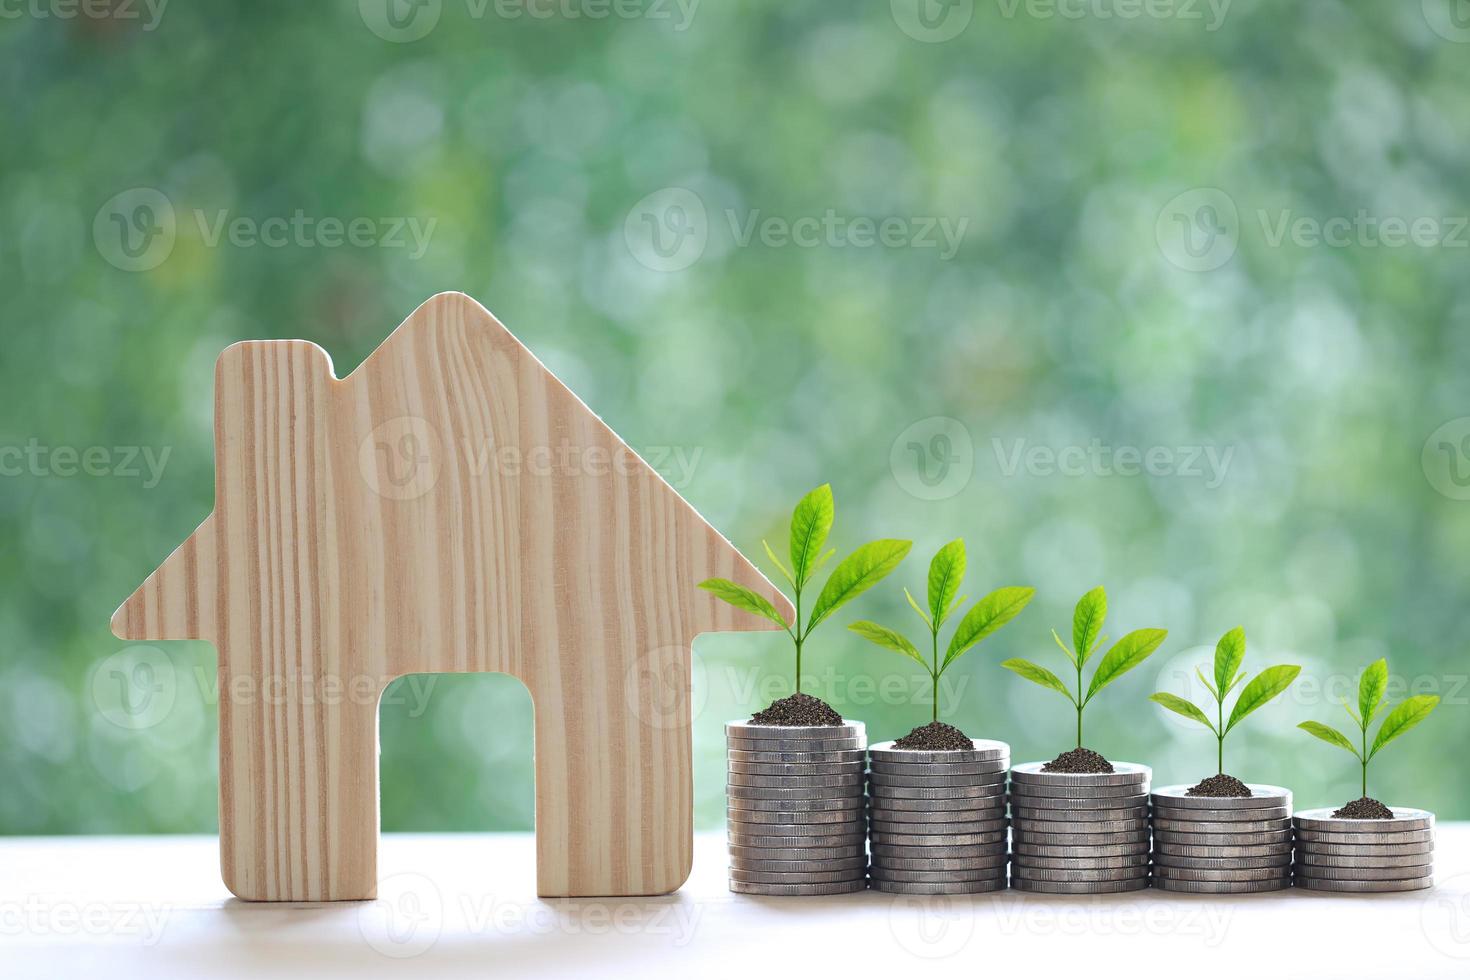 maison modèle et arbres poussant sur une pile de pièces d'argent sur fond vert naturel, investissement commercial et concept immobilier photo